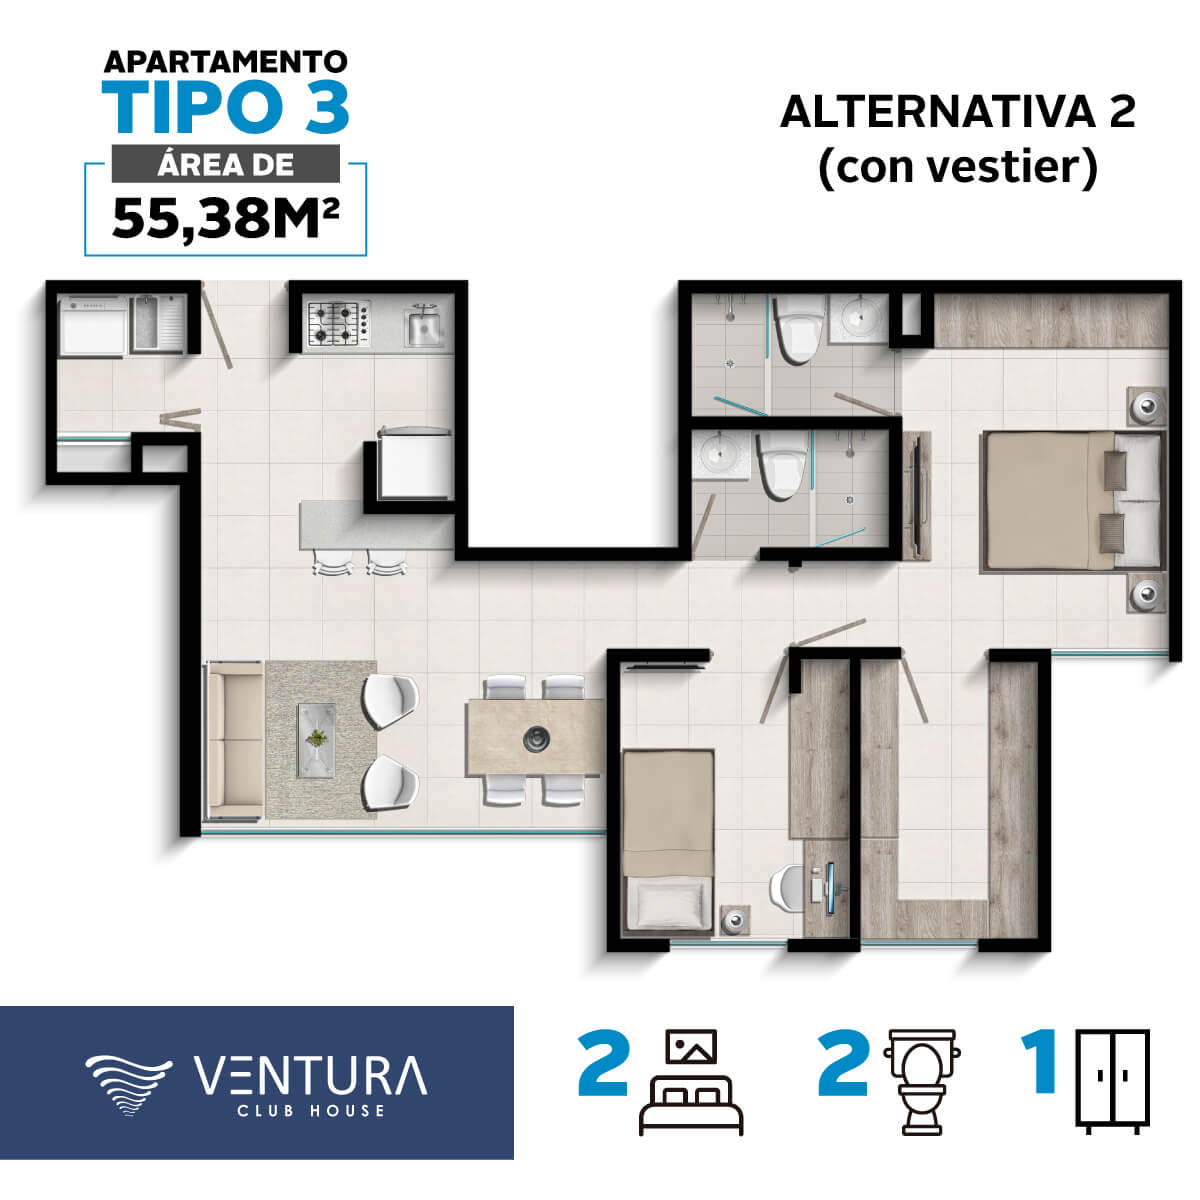 Tipos-Aptos-Ventura-apartamento-tipo3-alternativa2-cyu-colombia